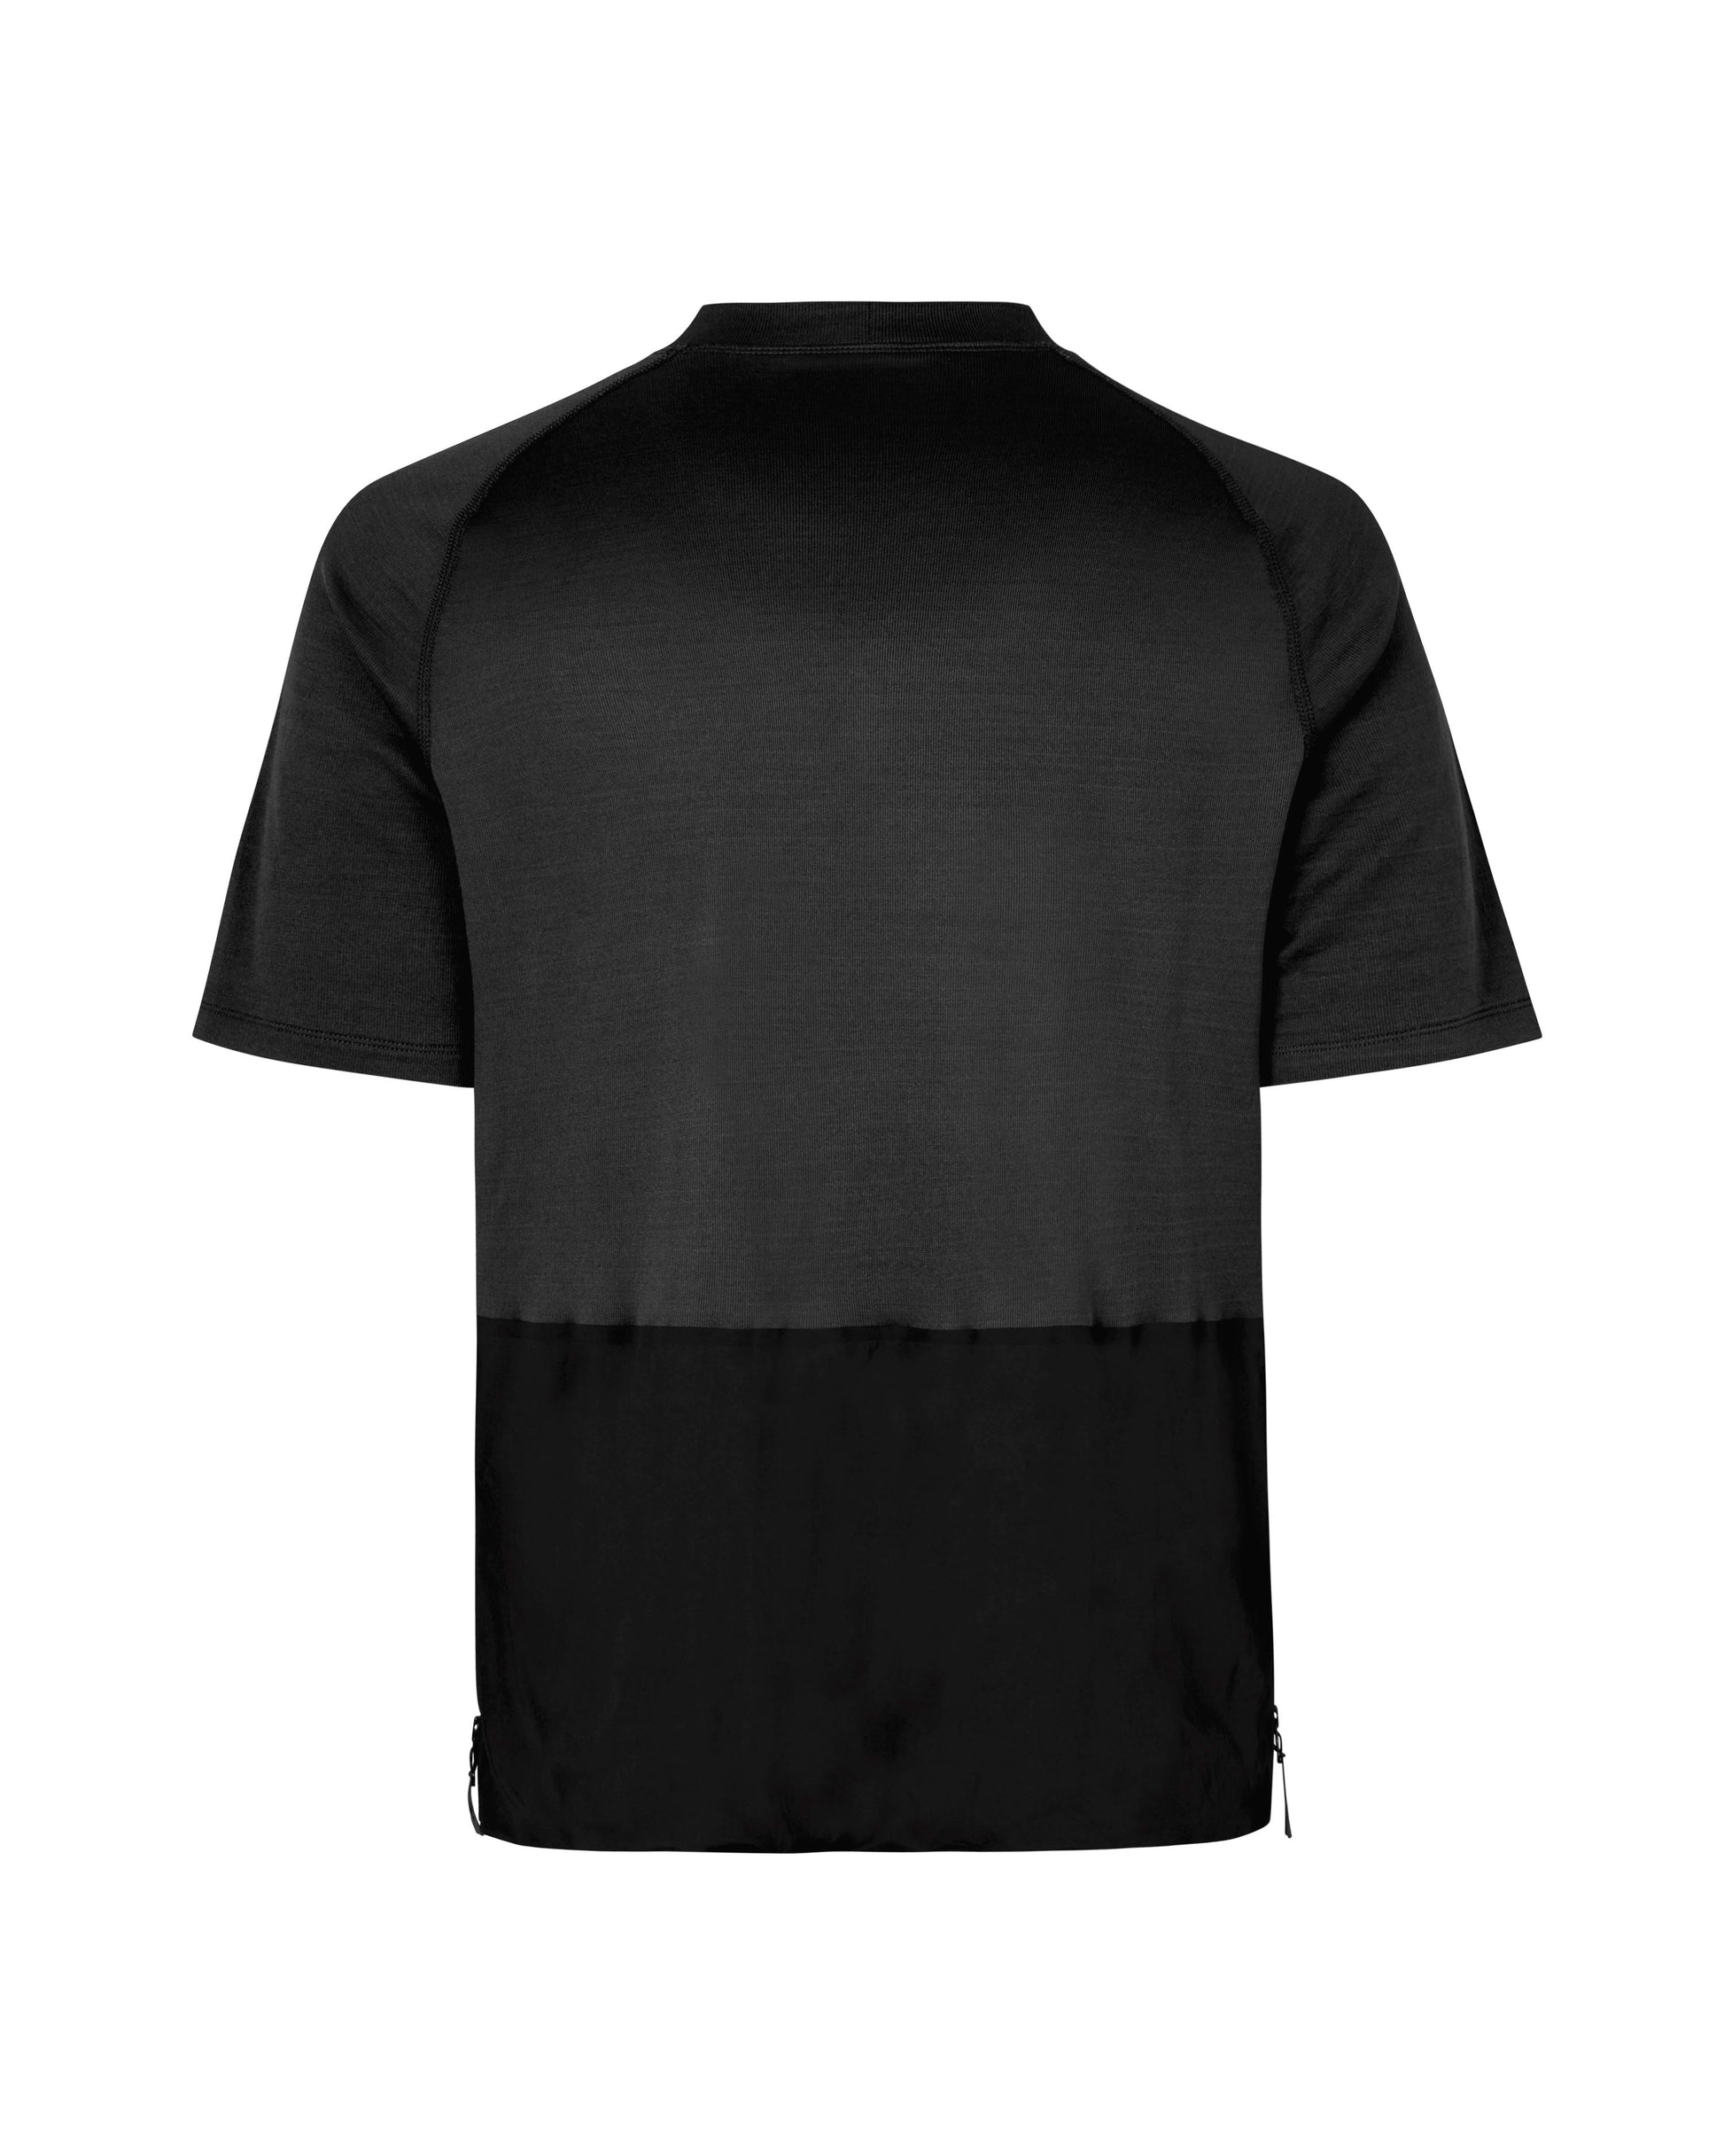 Pas Normal Studios - T-Shirt Escapism Technical Black T-Shirts Pas Normal Studios 